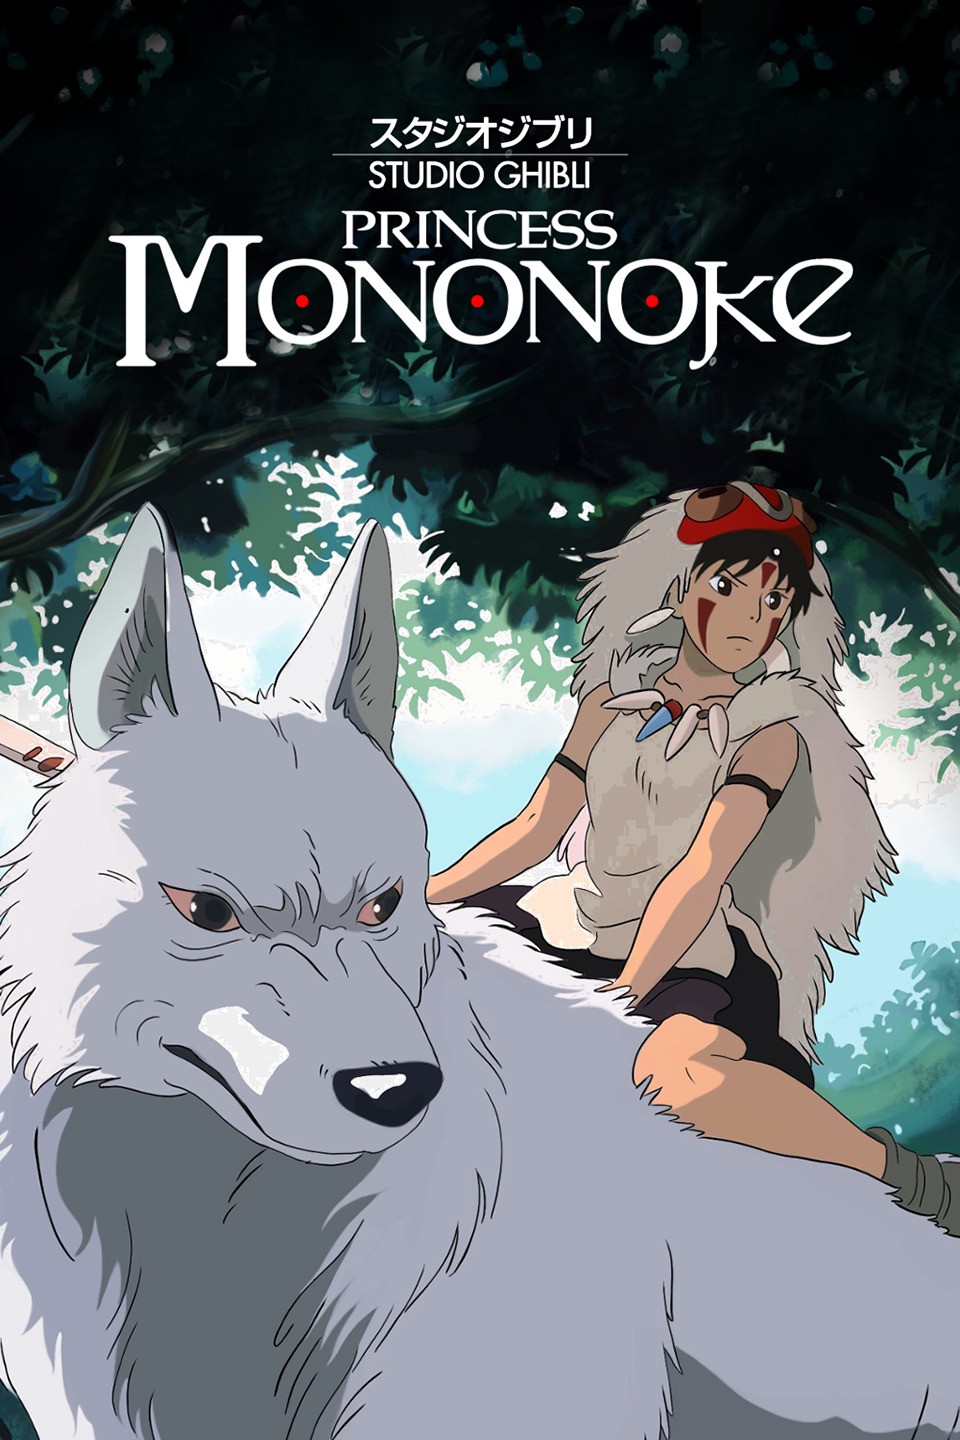 Mononoke (TV Mini Series 2007) - IMDb